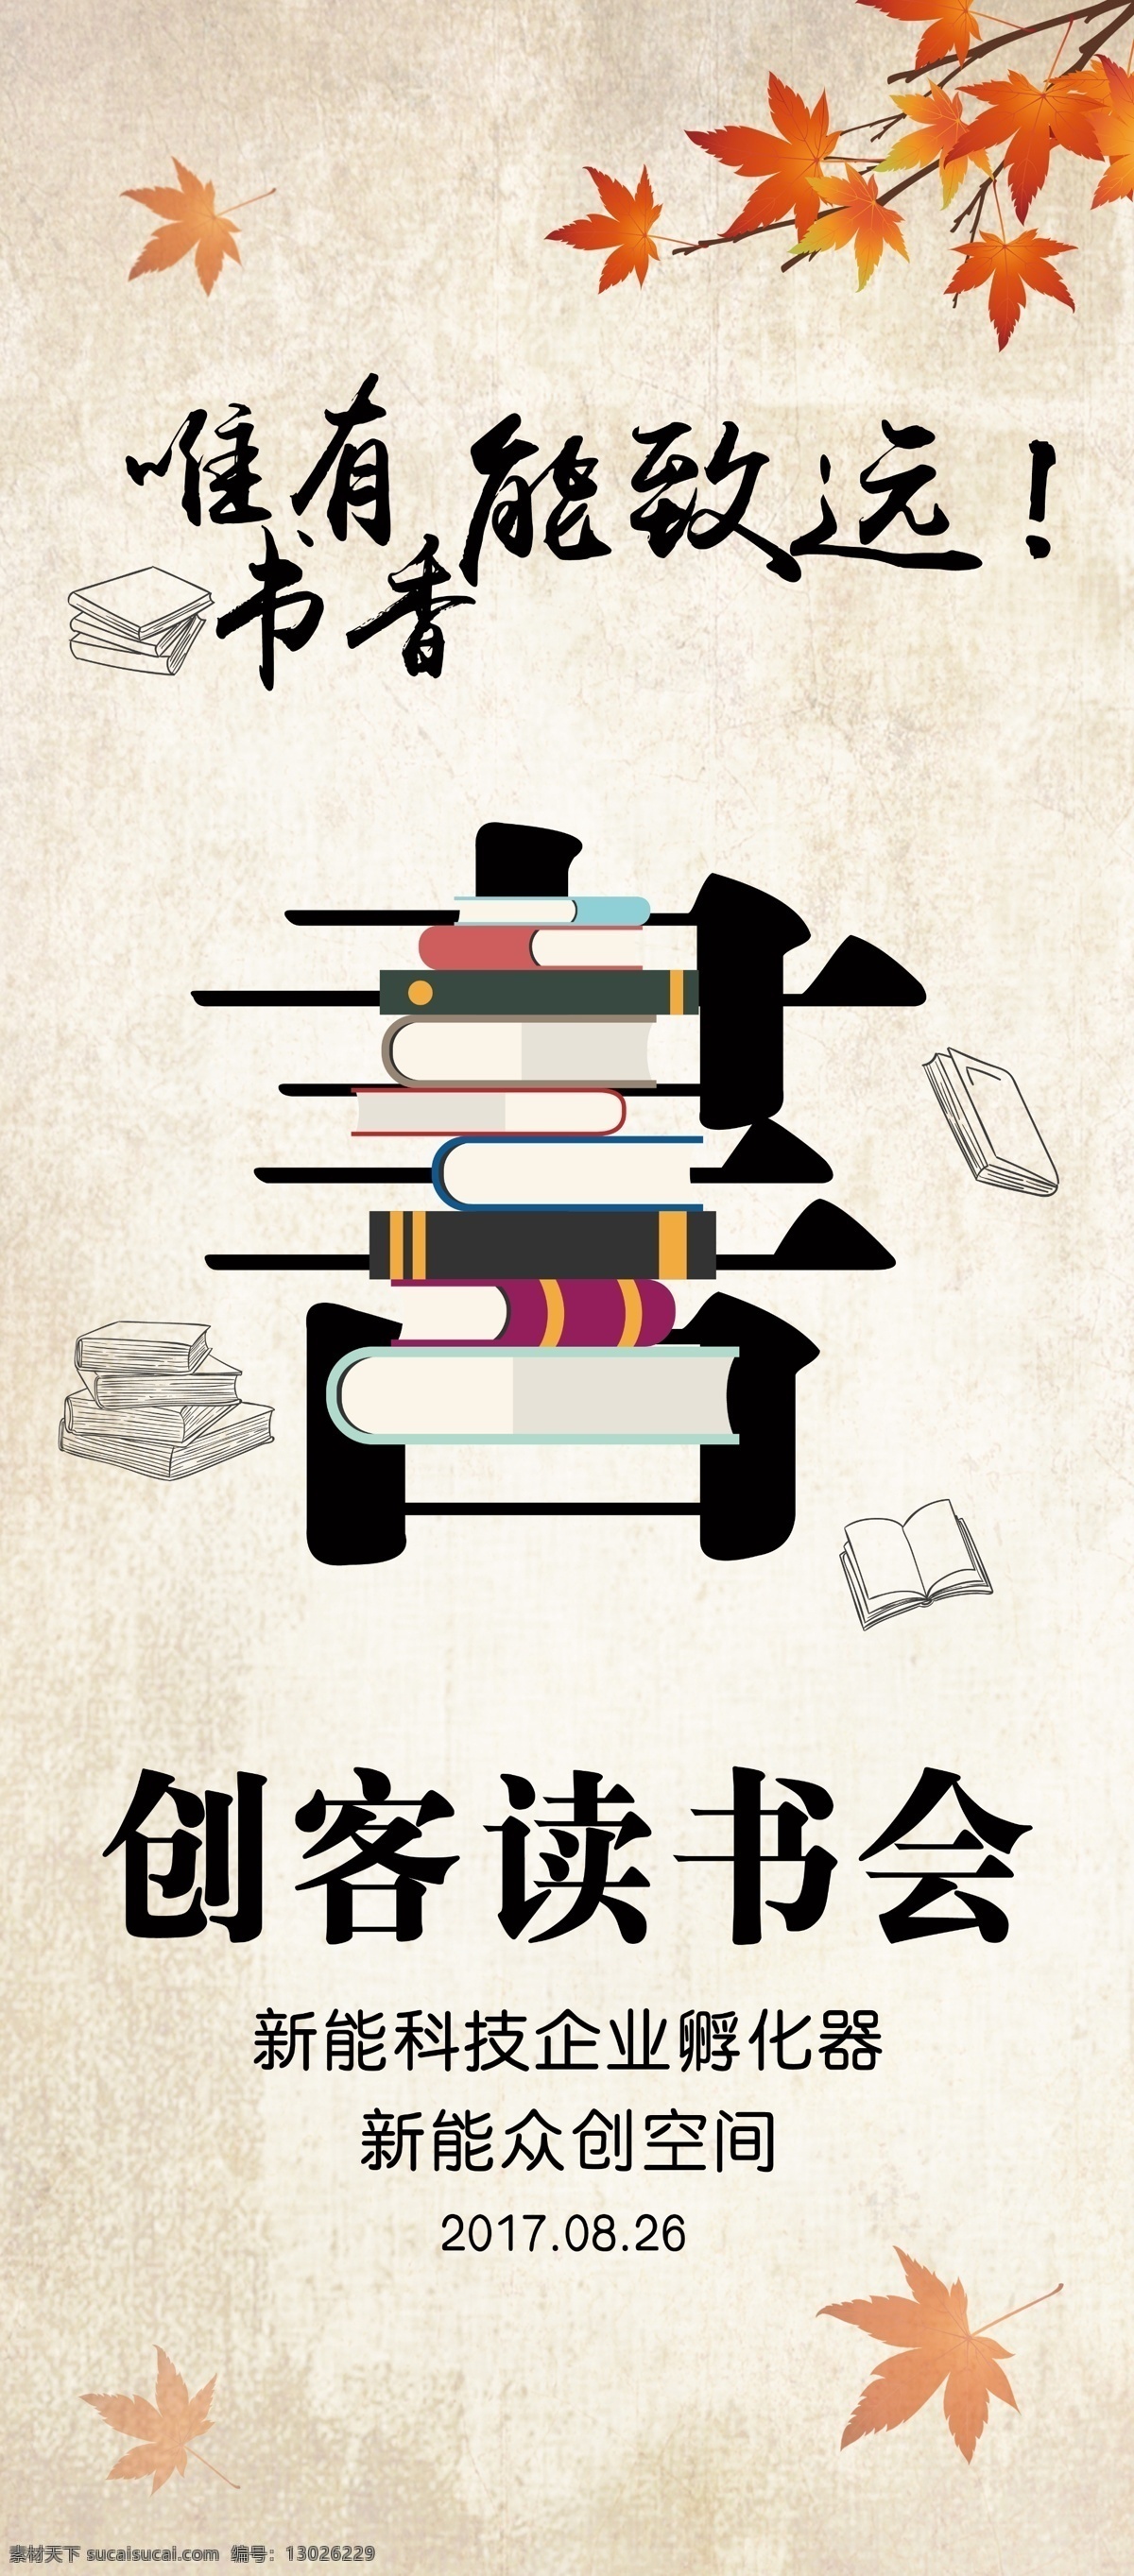 读书会 唯有书香 能致远 图书馆 读书公益广告 枫叶 中国风 海报 彩页